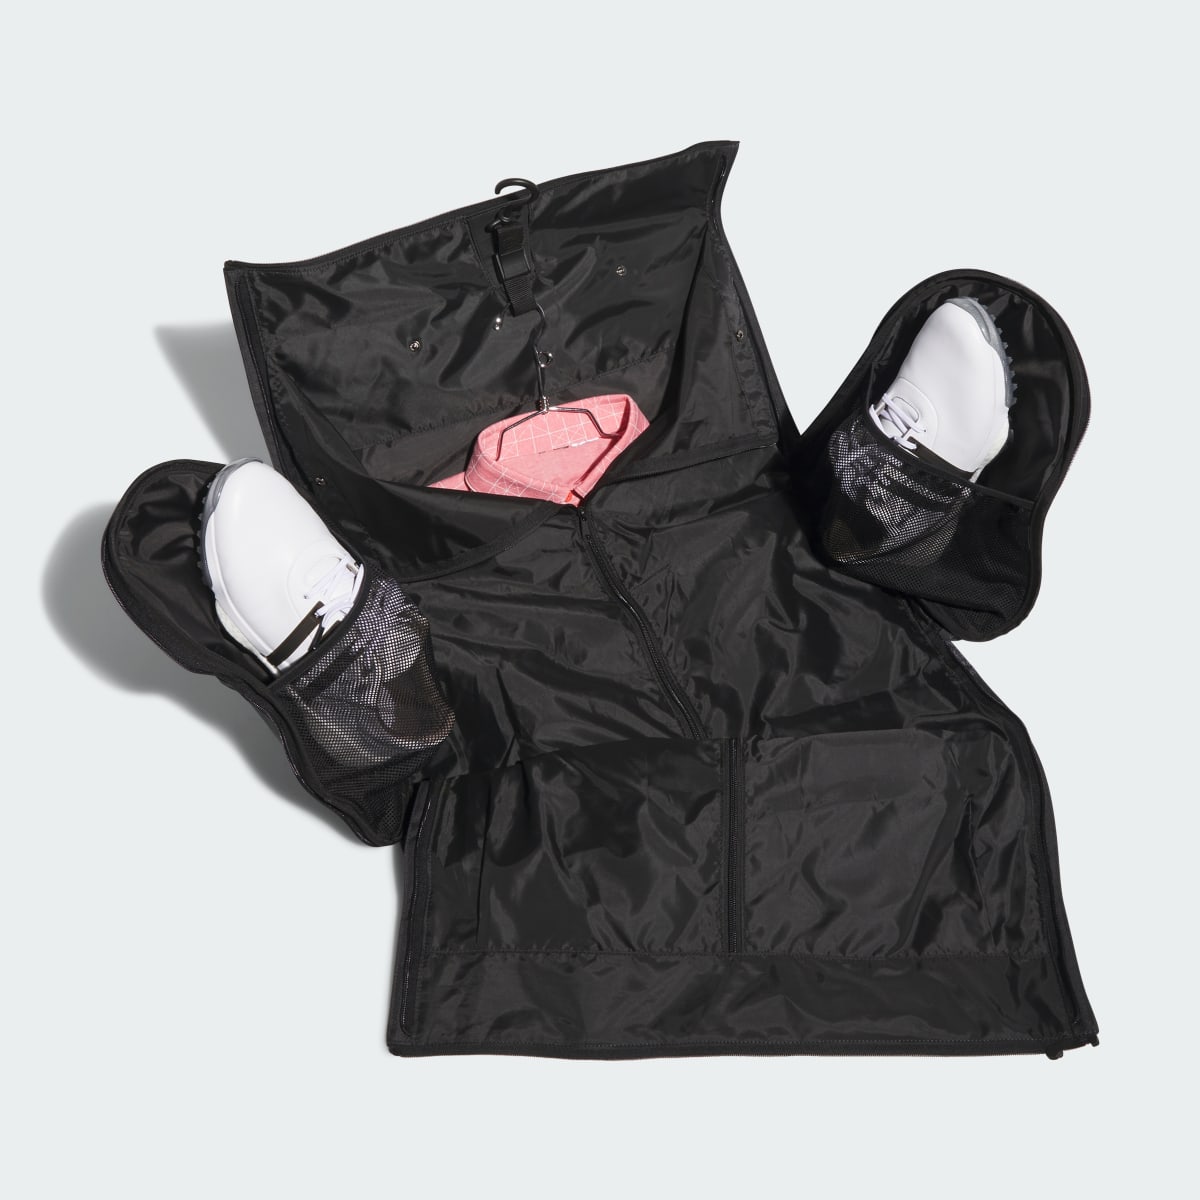 Adidas Garment Duffel Bag. 5